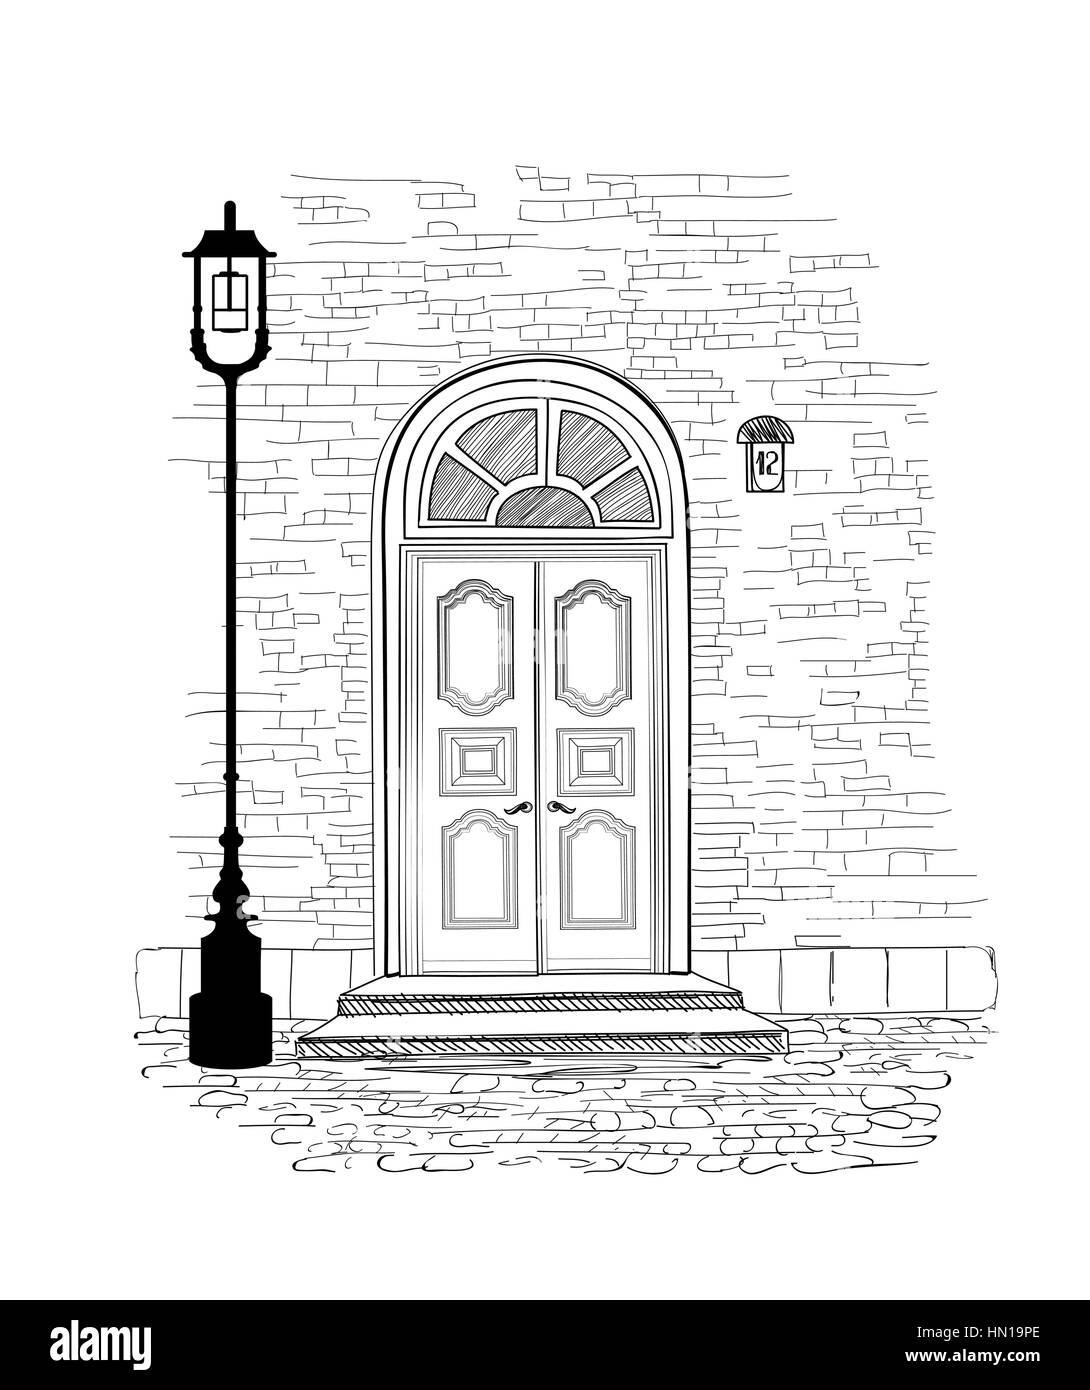 Alte Türen im Vintage Stil mit weißen Hintergrund. Haus Eingang hand Zeichnung Abbildung. Doodle gemütliche Straße Gasse wallpaper Design Stock Vektor